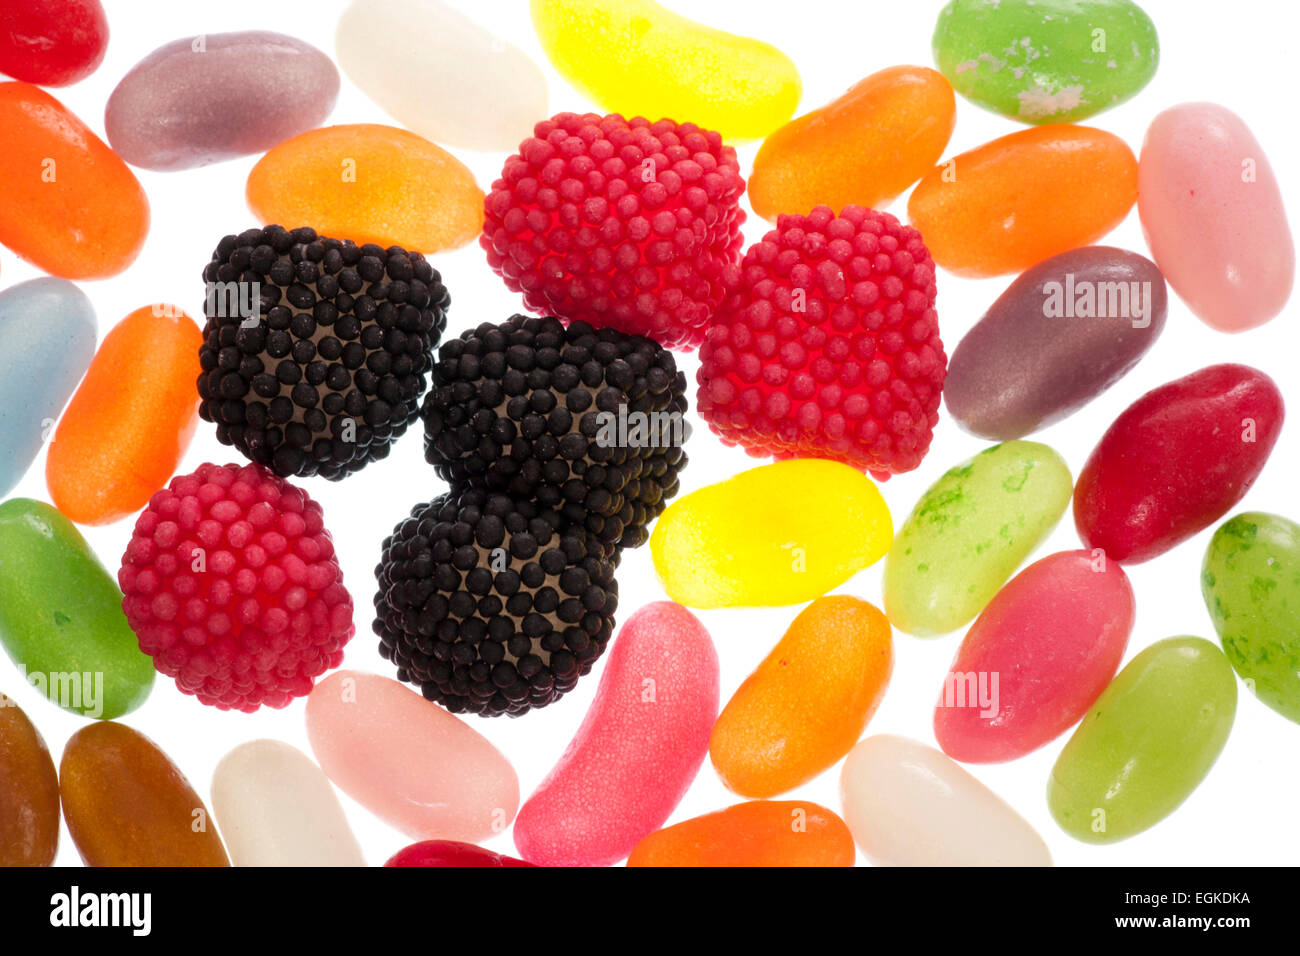 Jelly bean e lampone caramelle gommose sfondo astratto Foto Stock